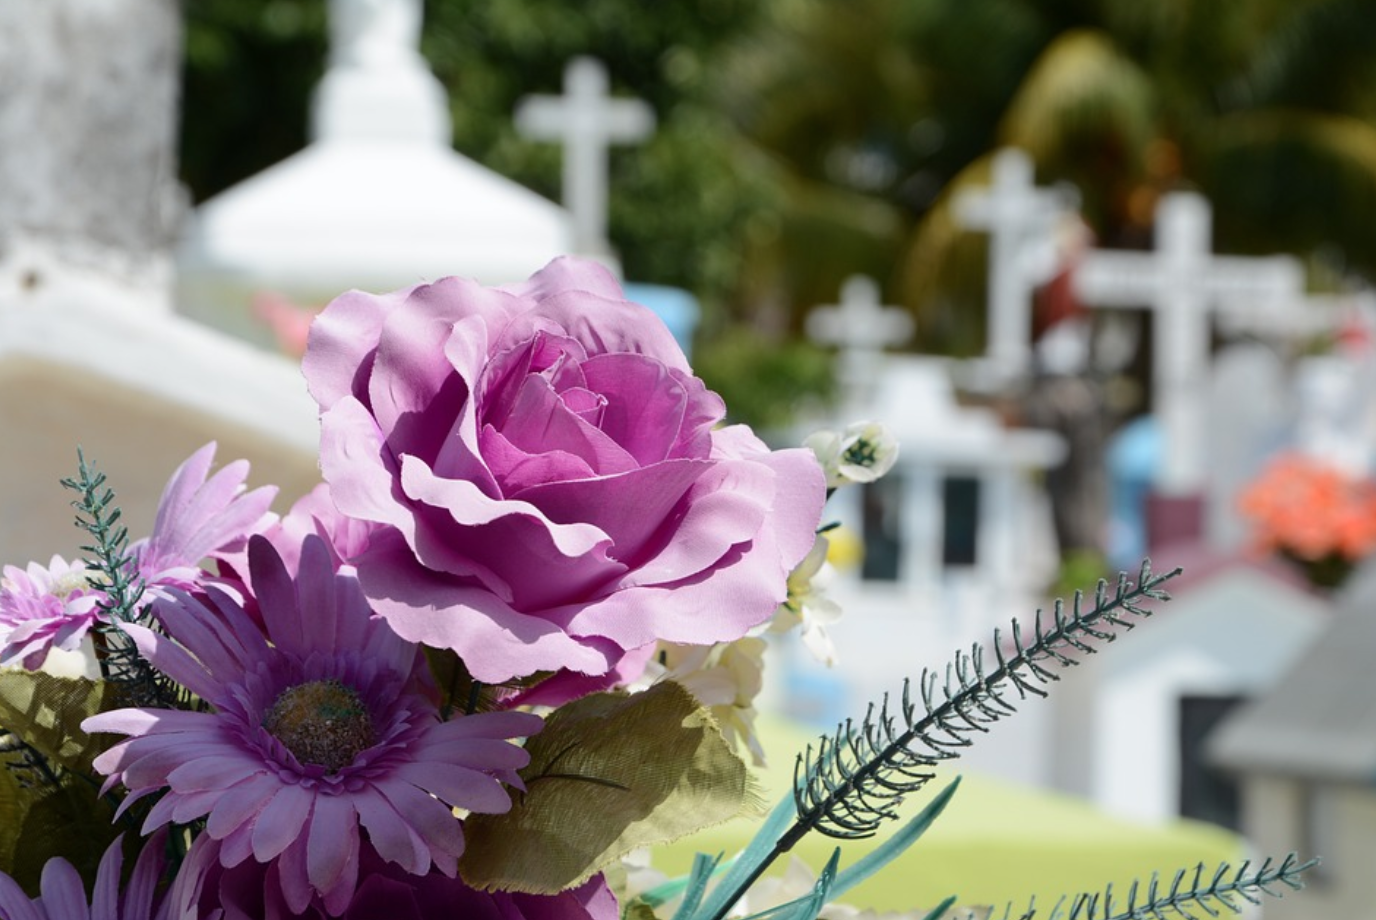 Lavender flowers at a cemetery; image by Vlanka, via Pixabay.com.